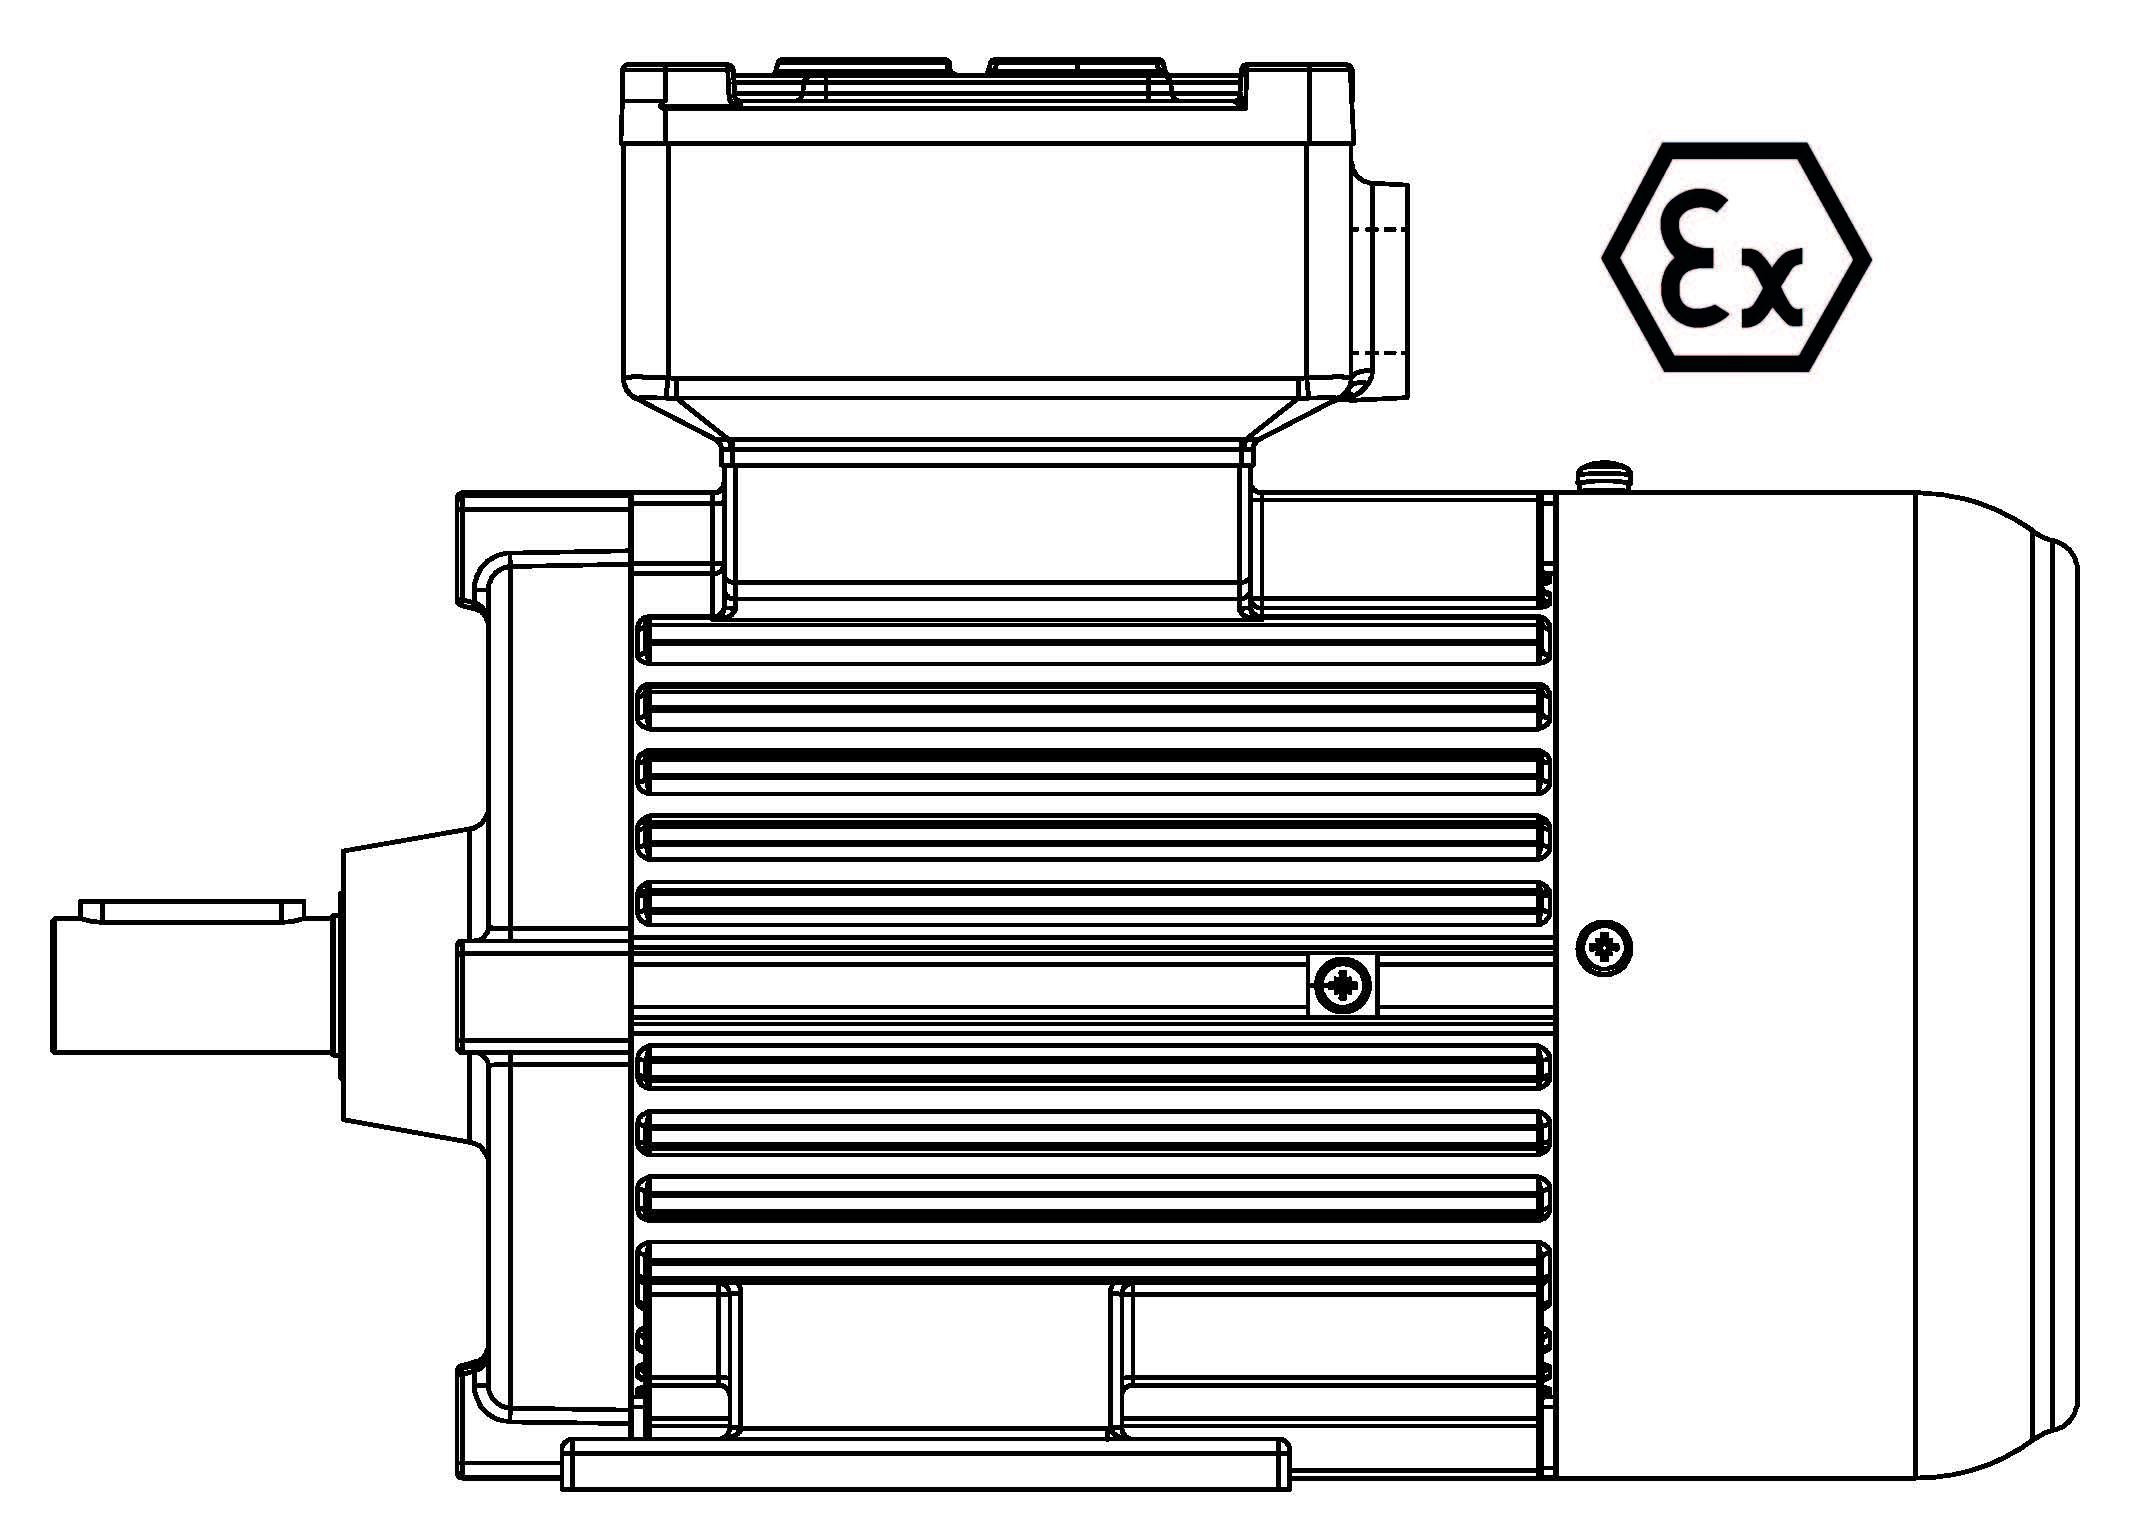 ATEX-90-2P 2,2 B3 400/3/50 Ex d IIB Эл.двигатель B3, разм. 90, 2900 об/мин, 2,2 кВт, 400 В, 3ф, 50 Гц